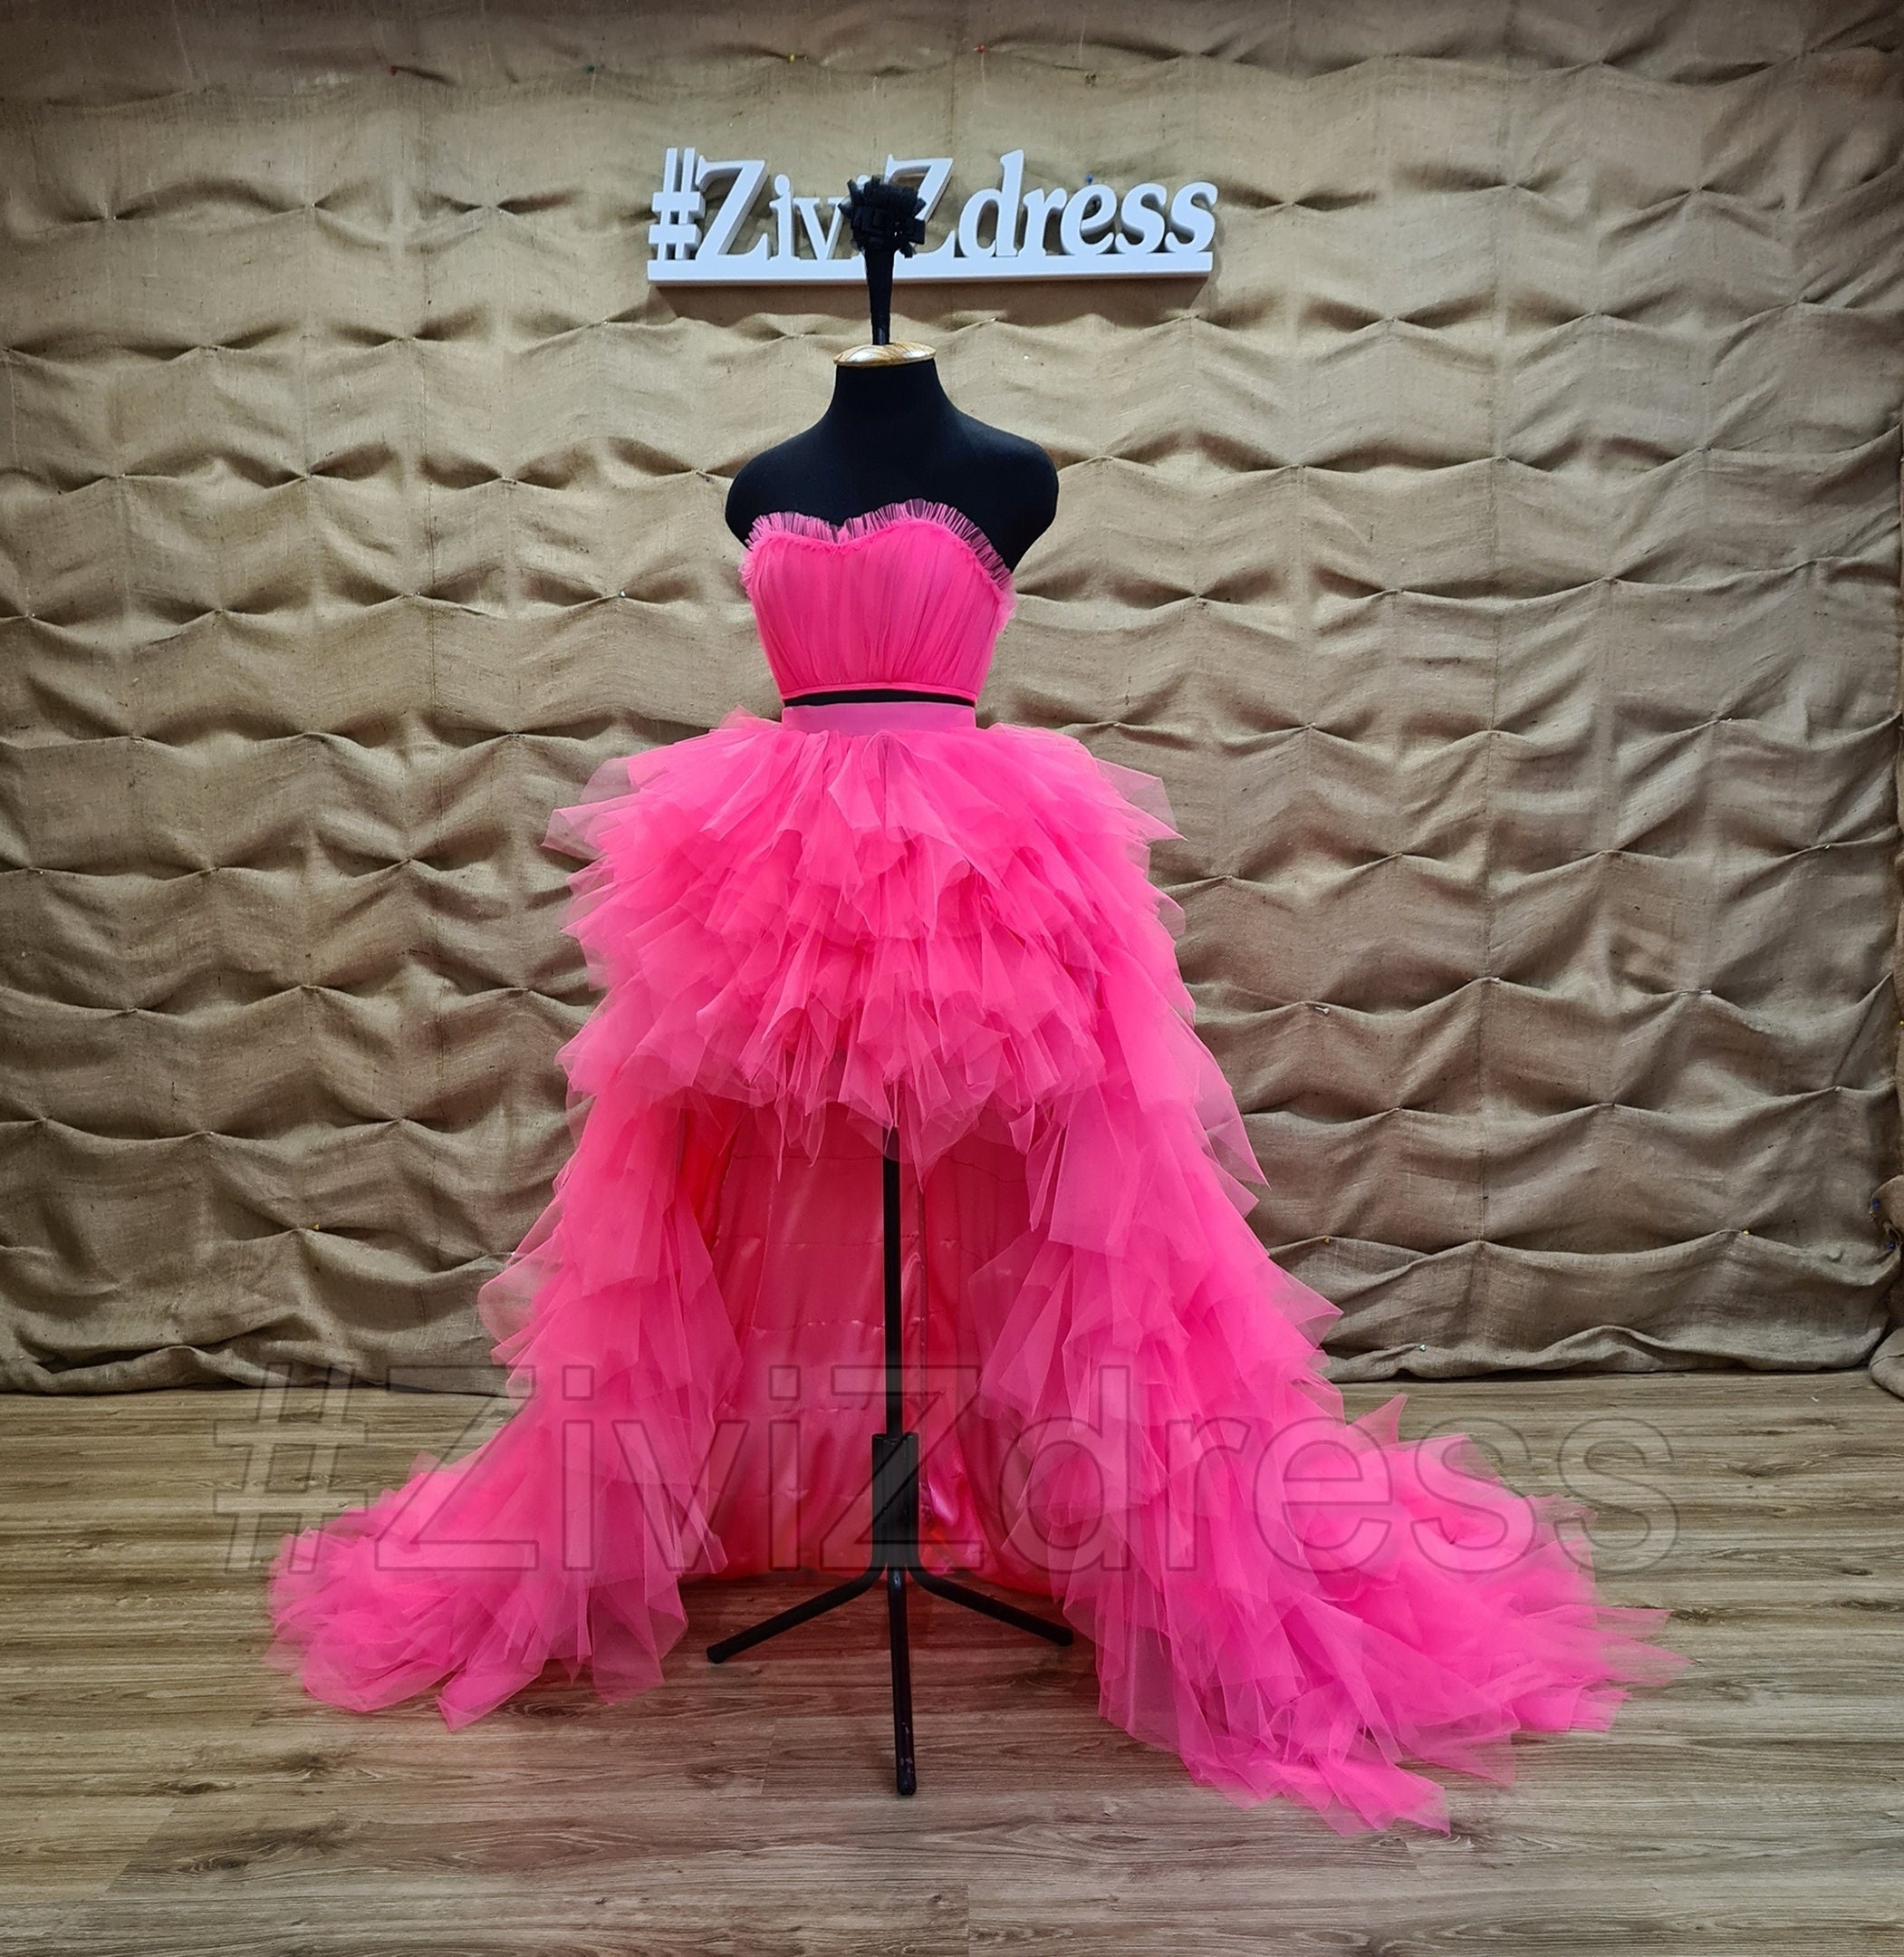 de primera categoría identificación gusano Vestido de novia rosa caliente conjunto: corsé superior - Etsy España